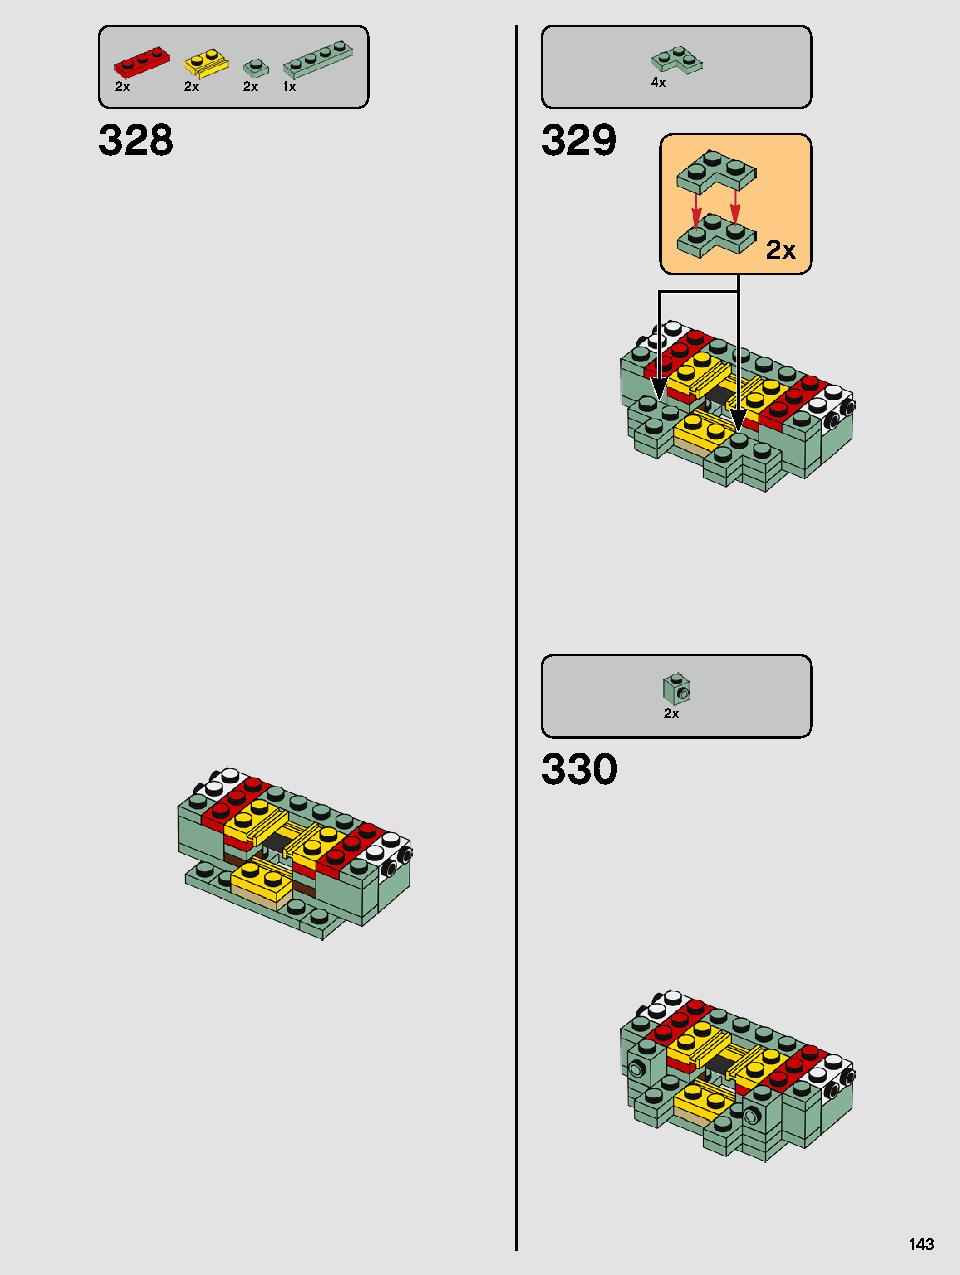 ヨーダ™ 75255 レゴの商品情報 レゴの説明書・組立方法 143 page